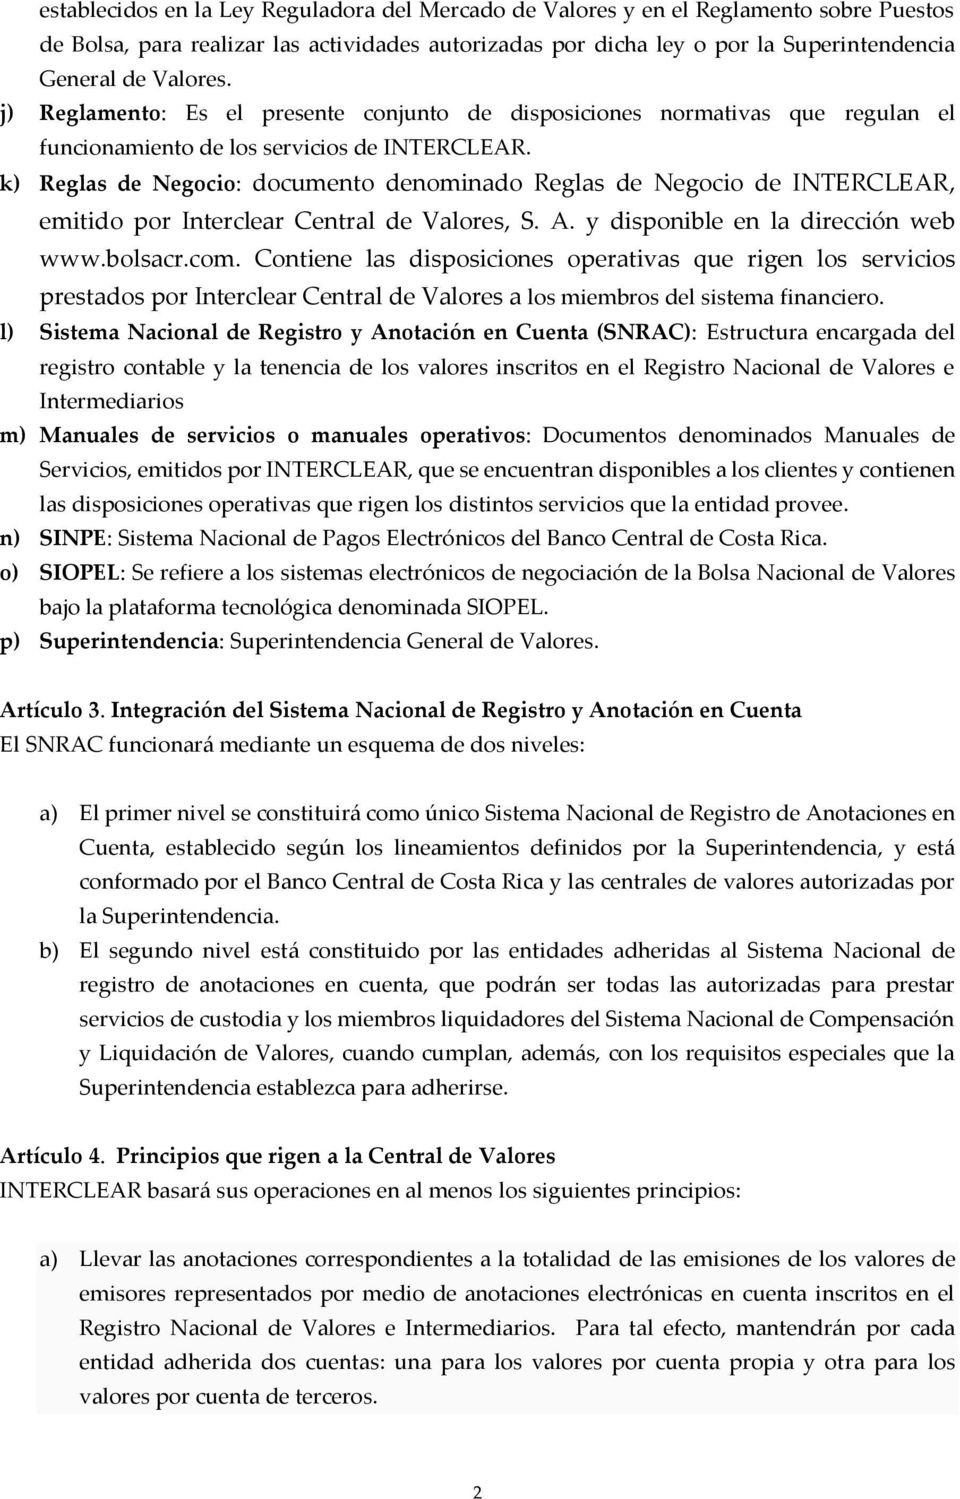 k) Reglas de Negocio: documento denominado Reglas de Negocio de INTERCLEAR, emitido por Interclear Central de Valores, S. A. y disponible en la dirección web www.bolsacr.com.